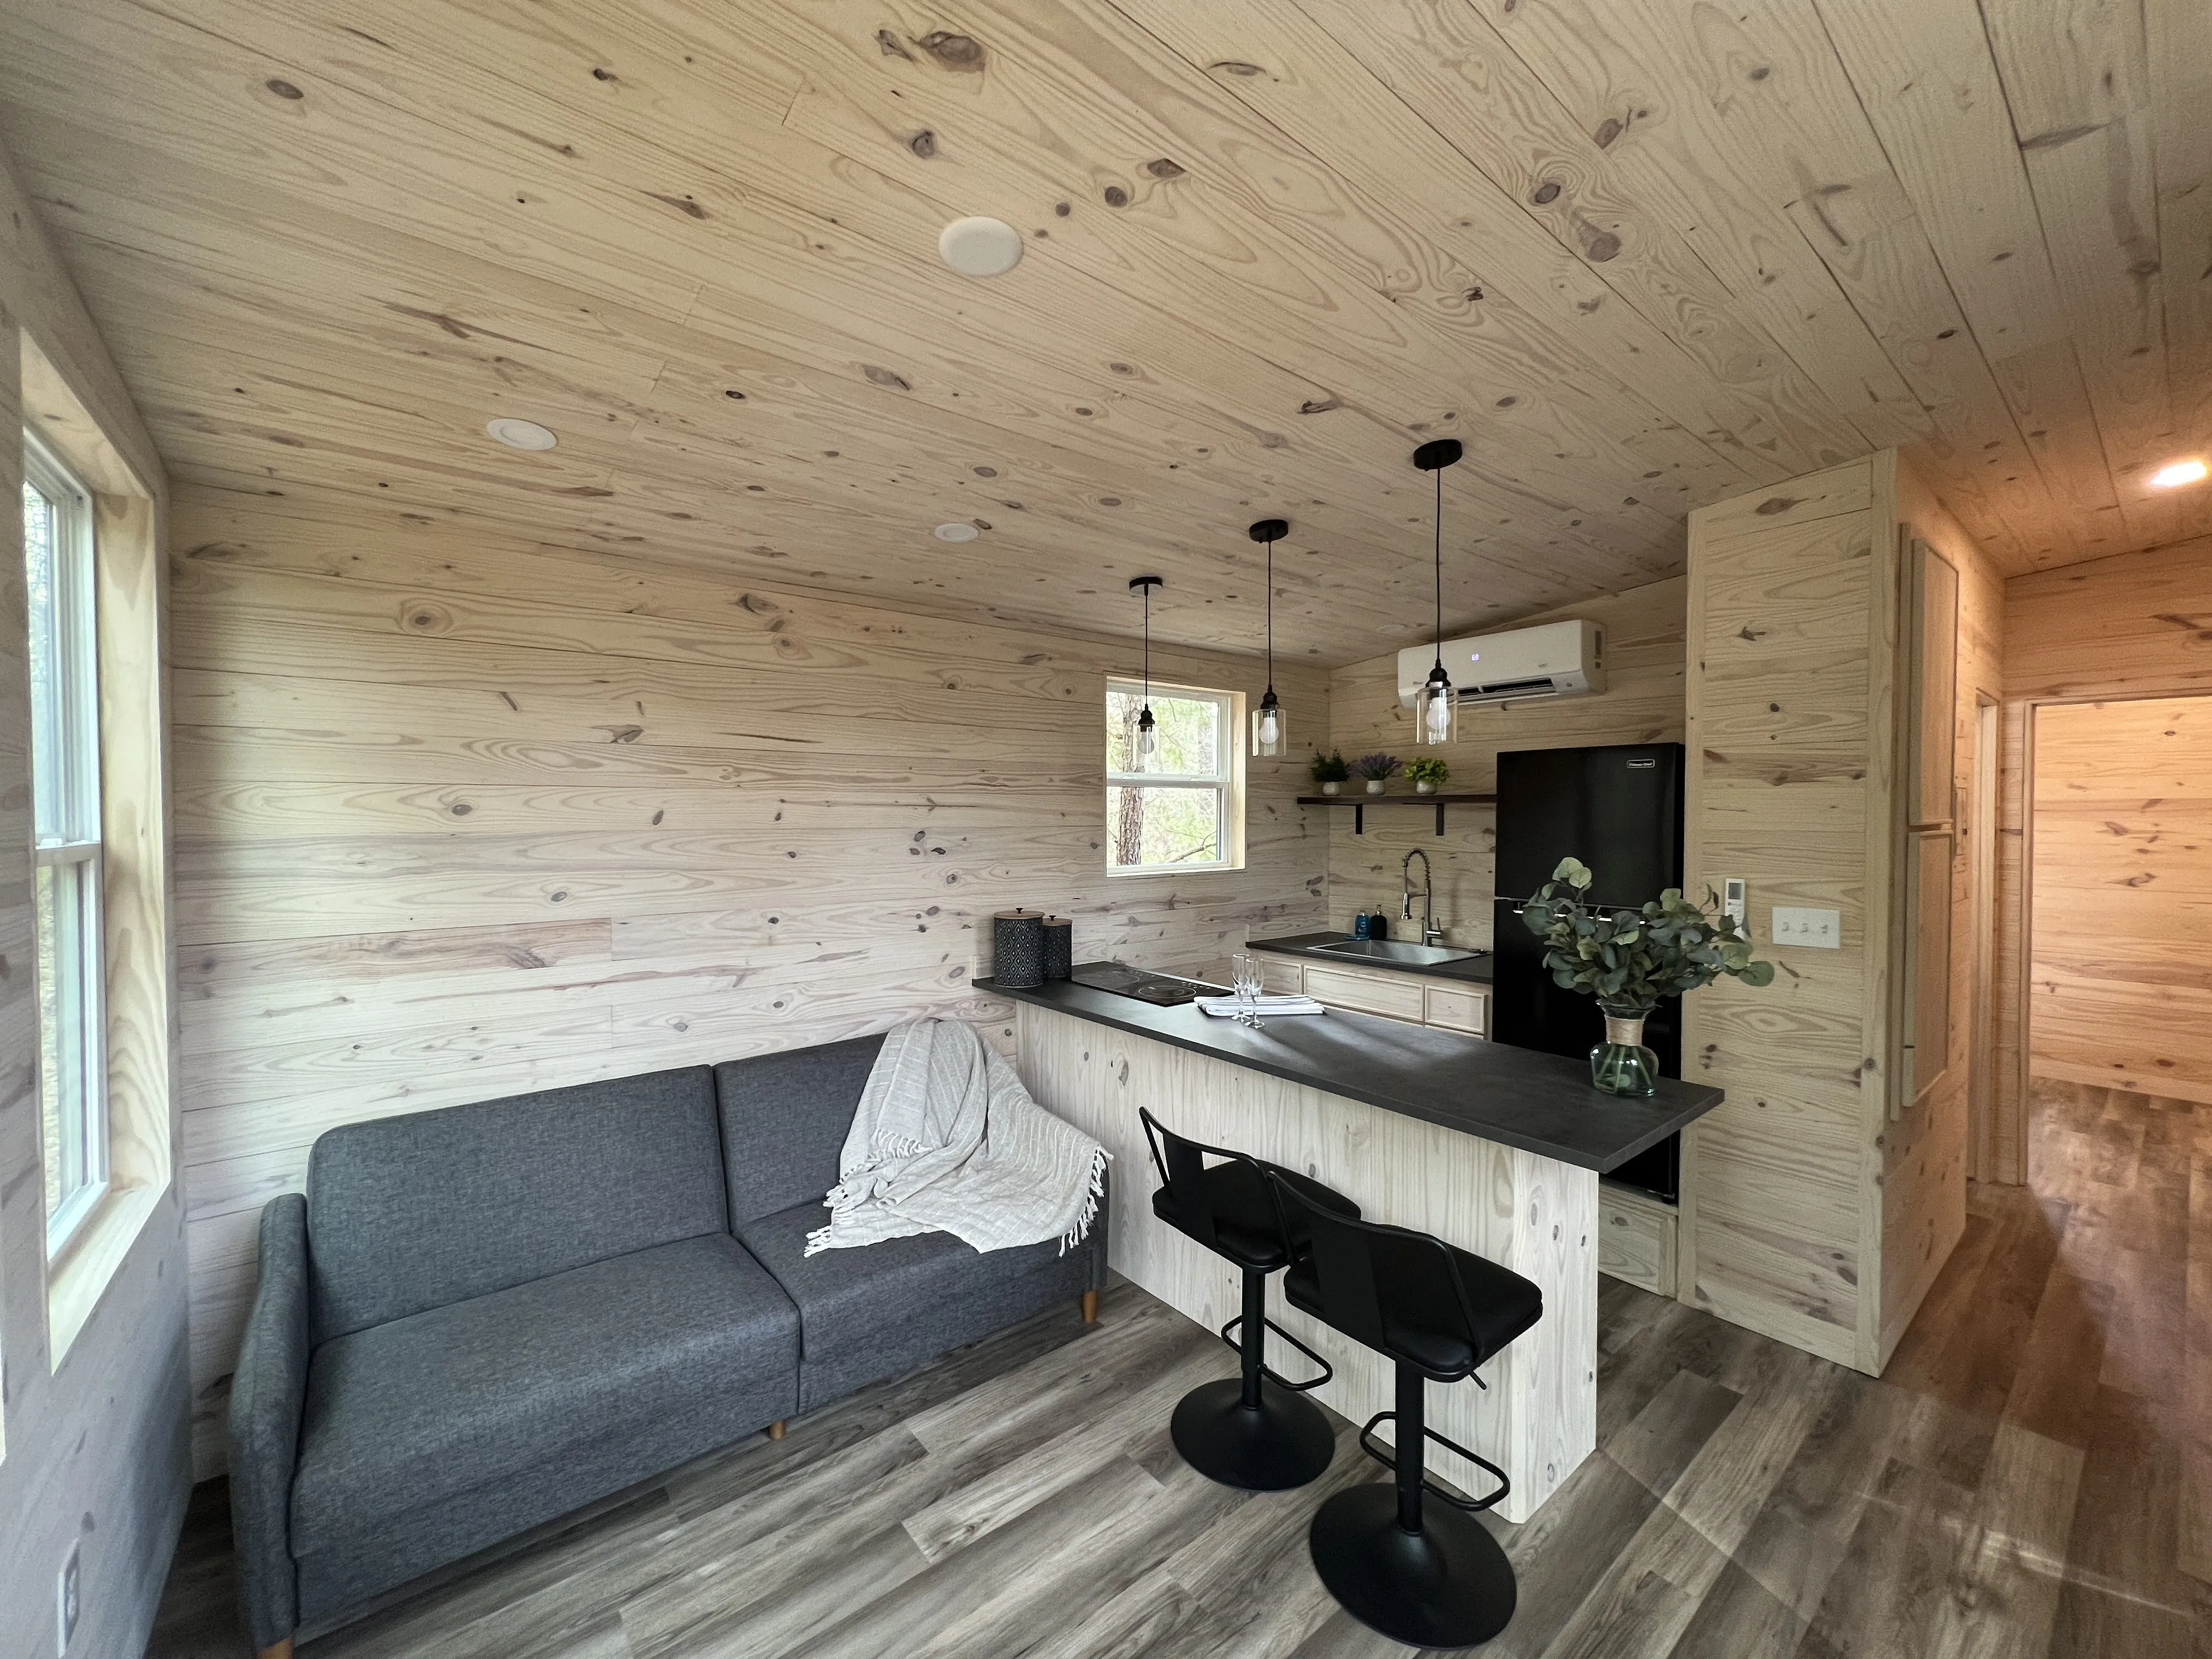 One bedroom cabin